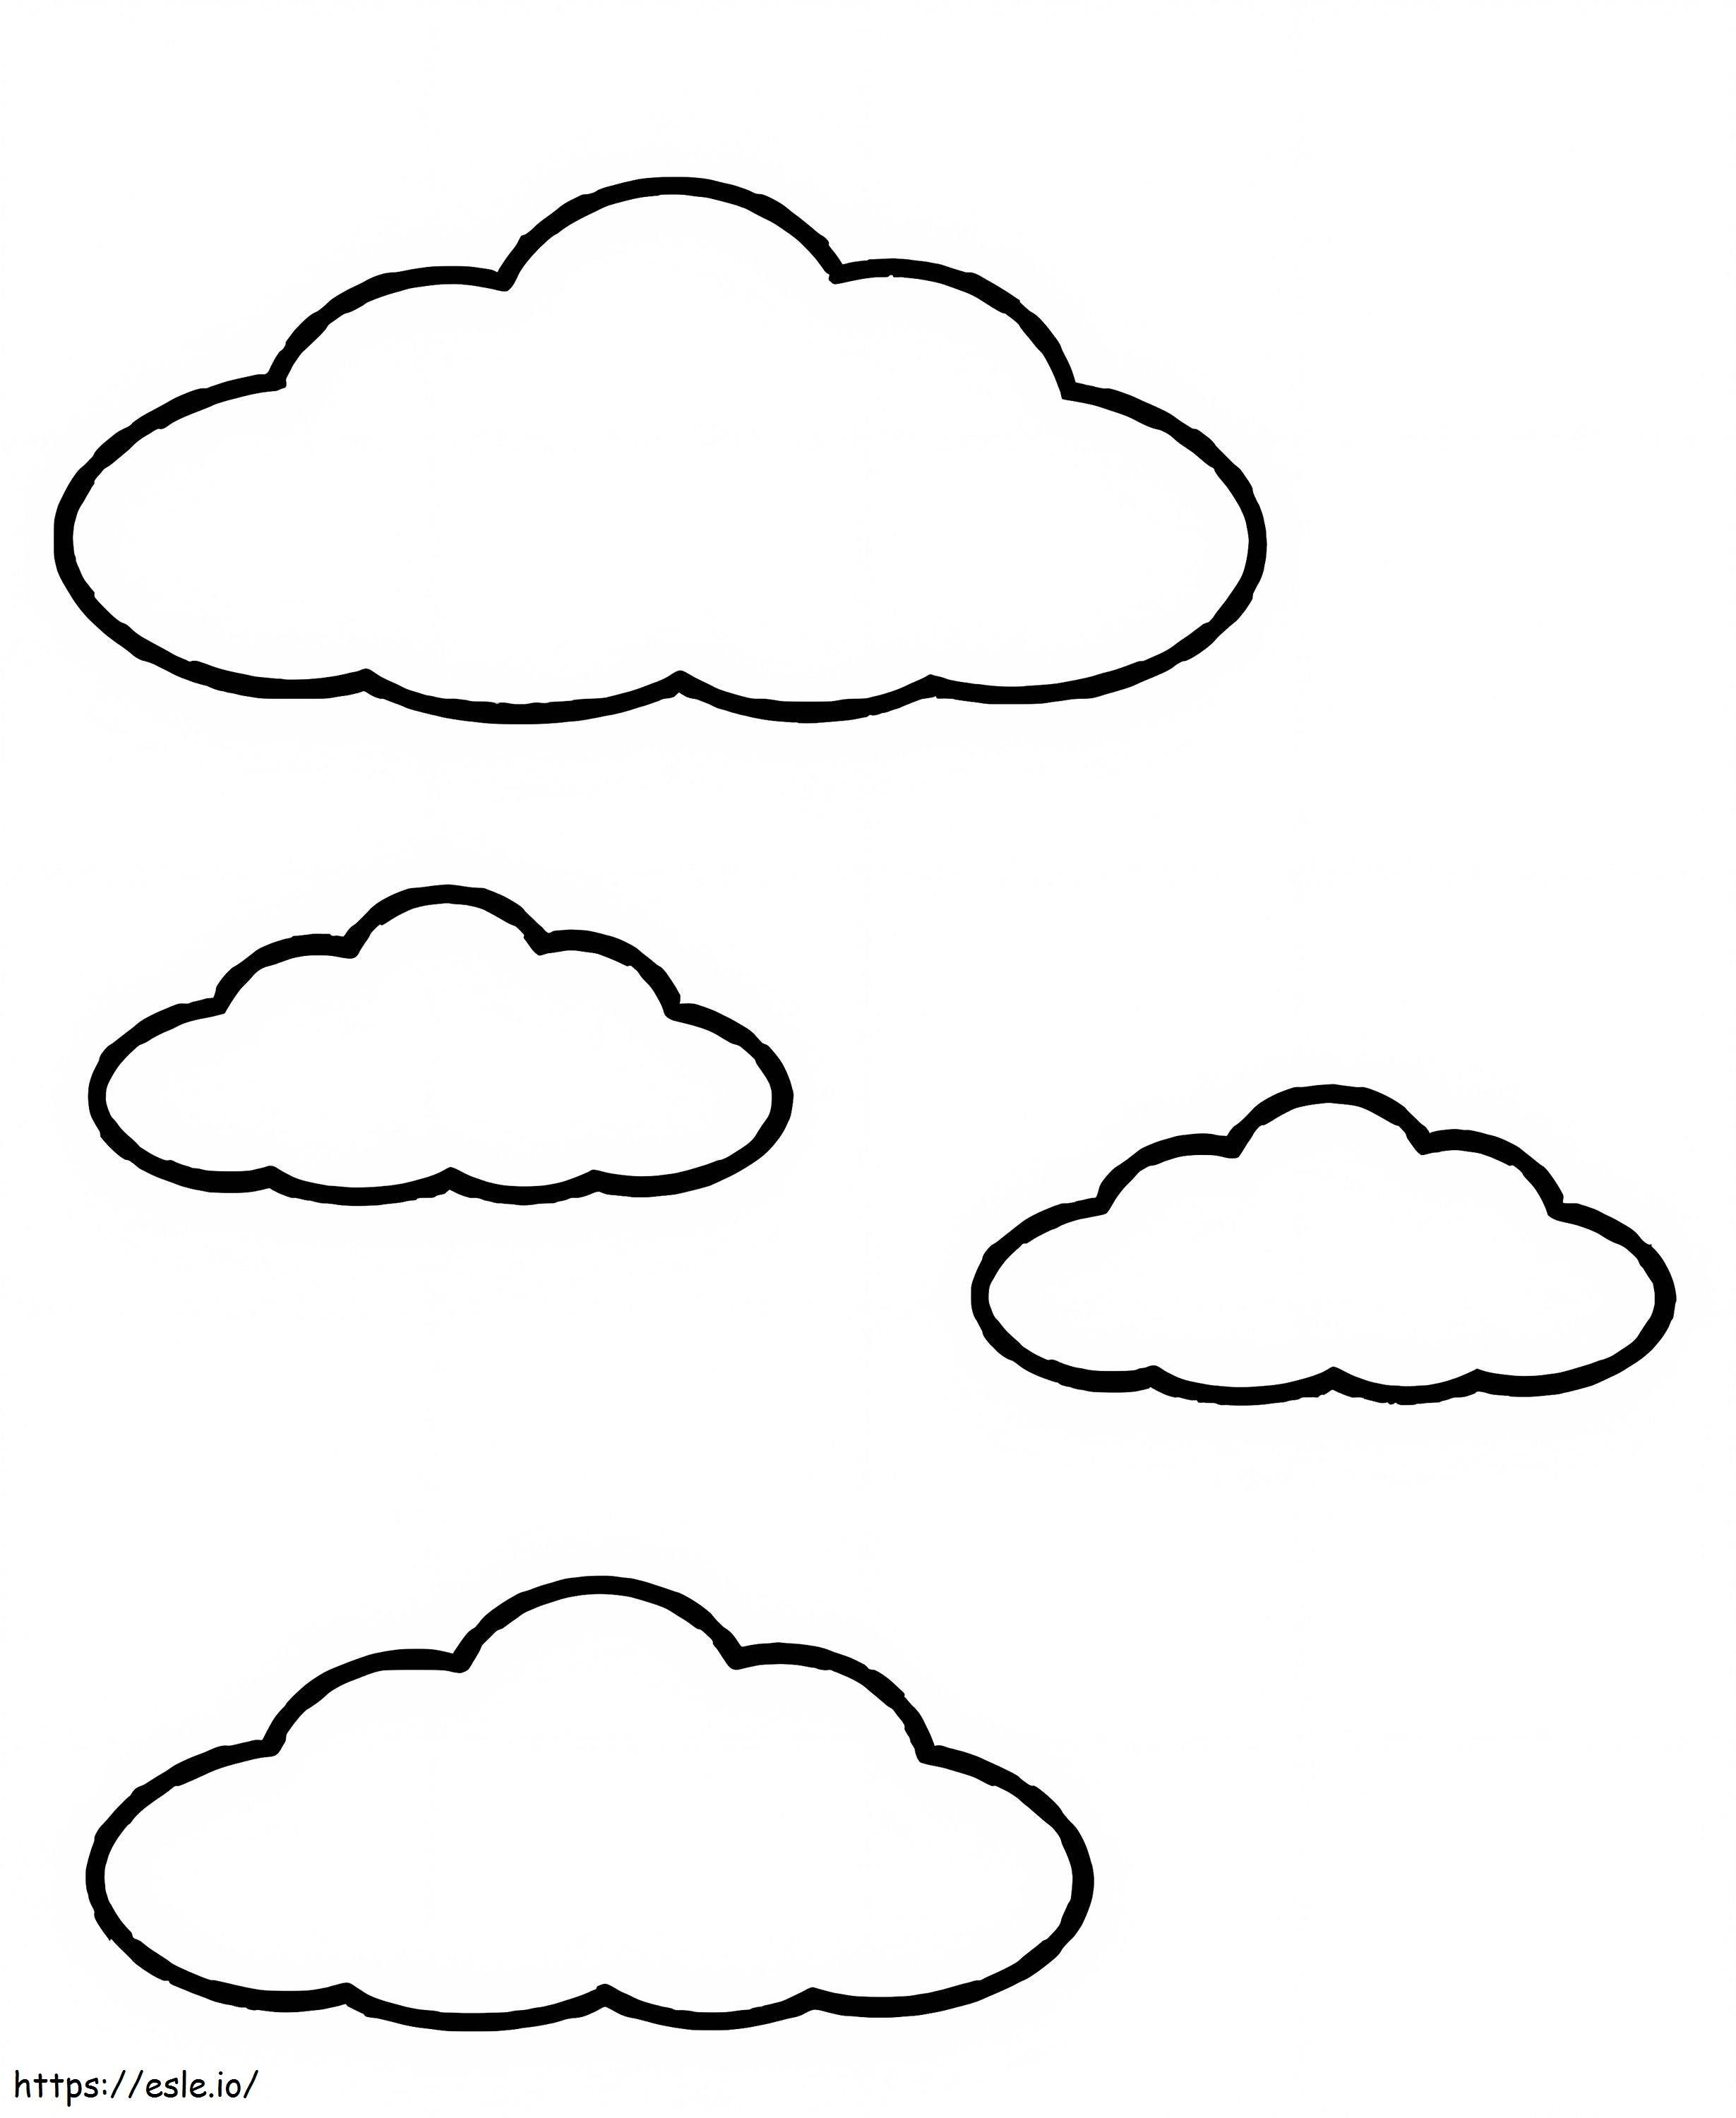 Wolke 2 ausmalbilder